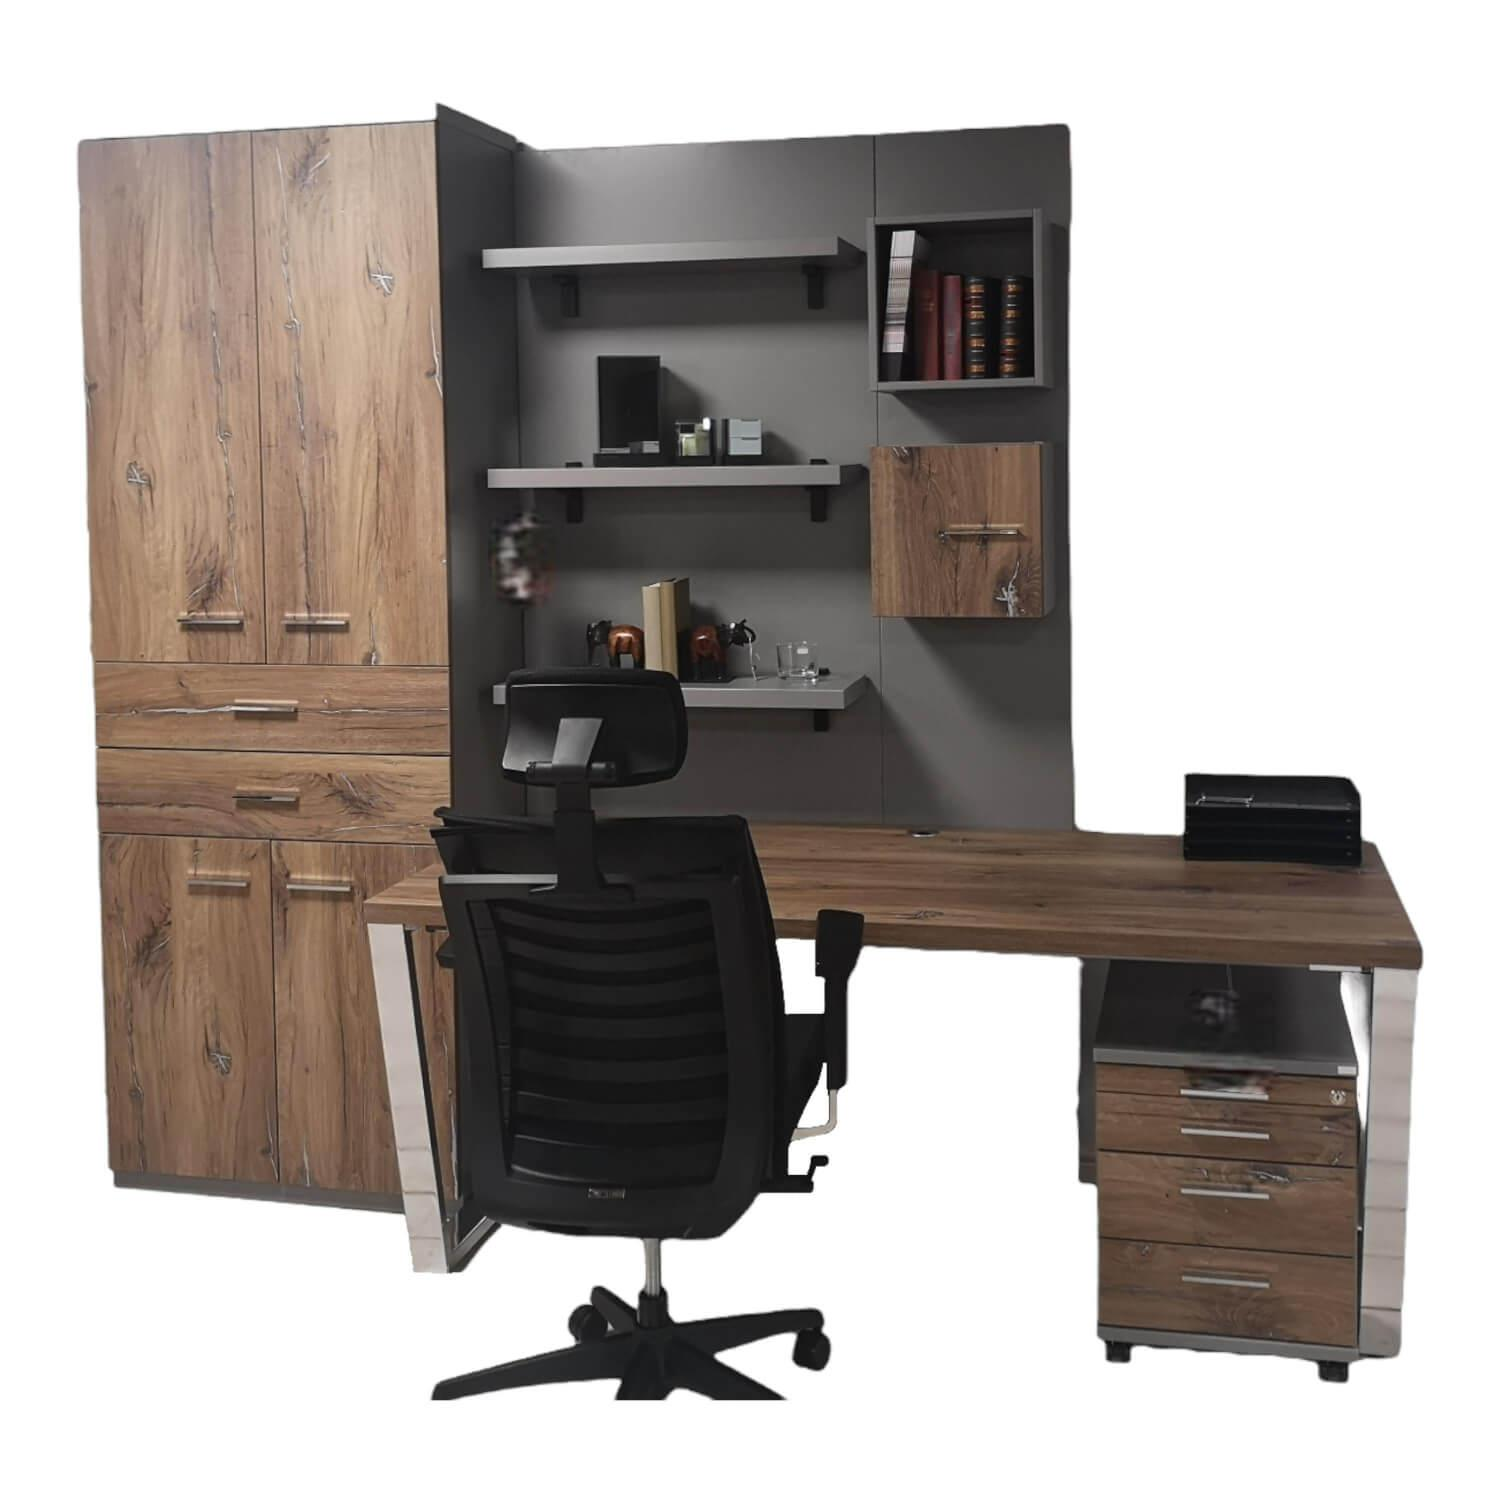 Büro System LS990 bestehend aus 1x Wand Schrank mit 4 Türen 1x Panellrückwand 1x Schreibtisch 1x Rollcontainer 1x Sideboard